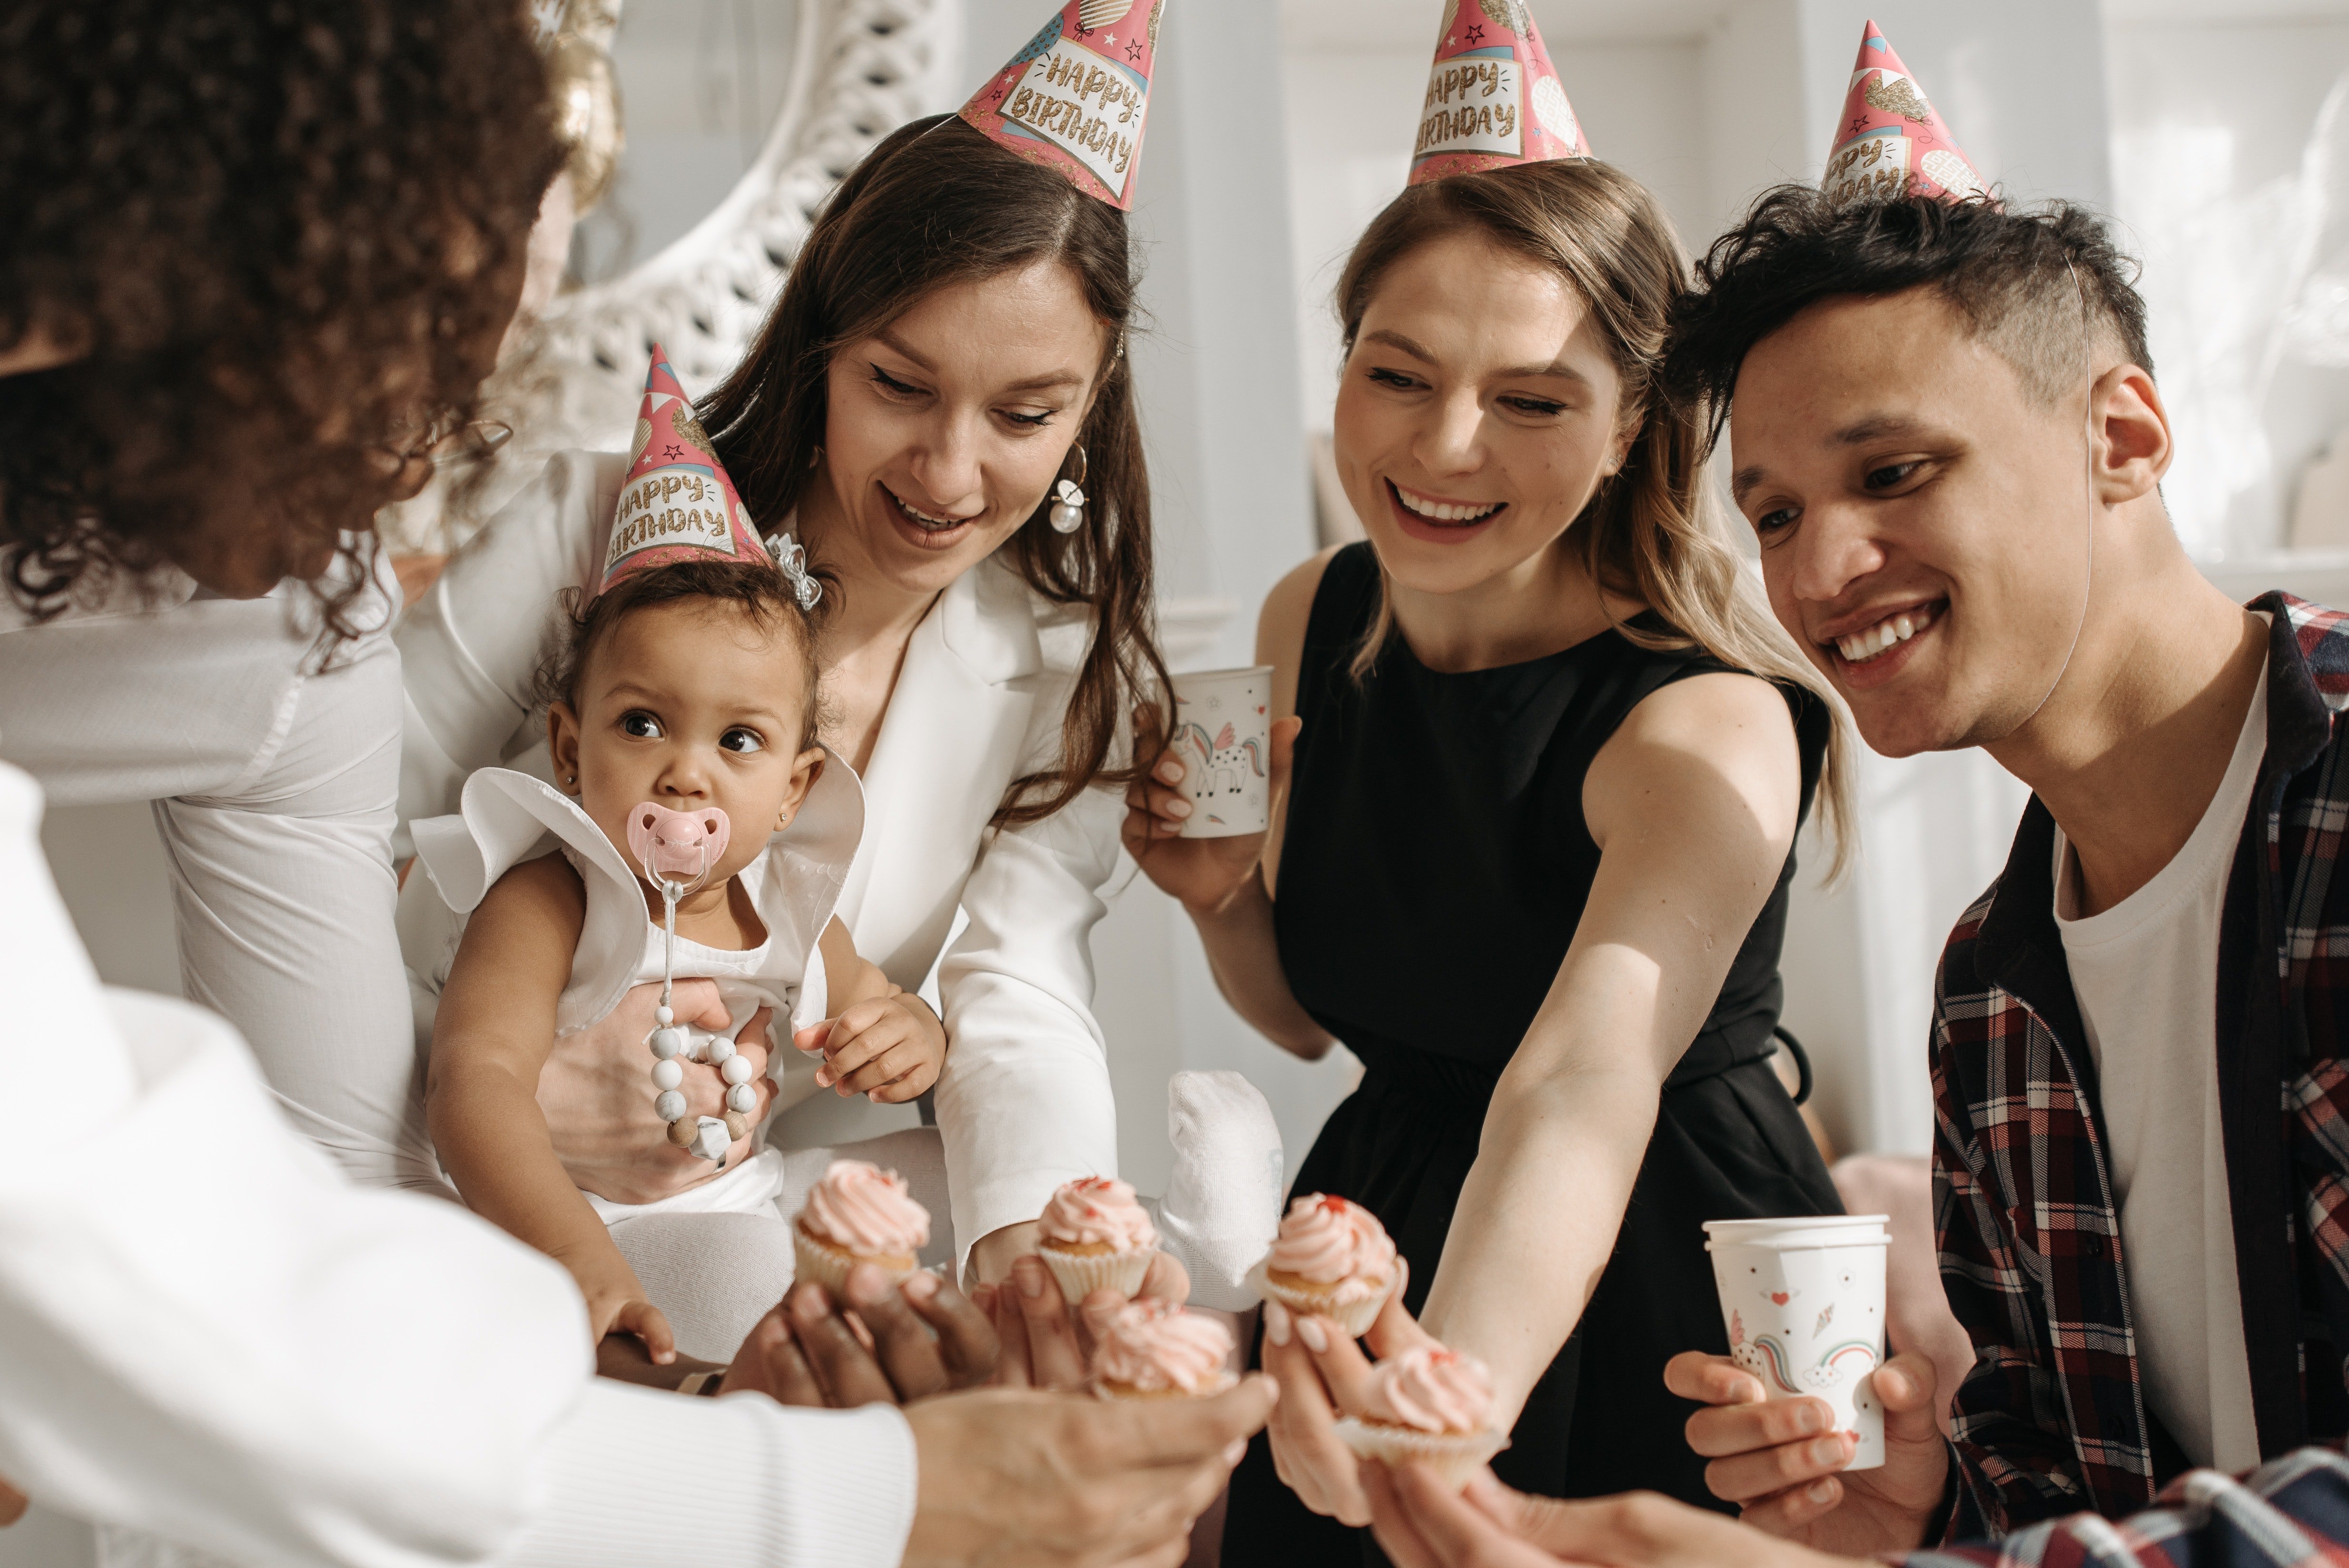 Membres d'une famille fêtant l'anniversaire de leur enfant | Source : Pexels